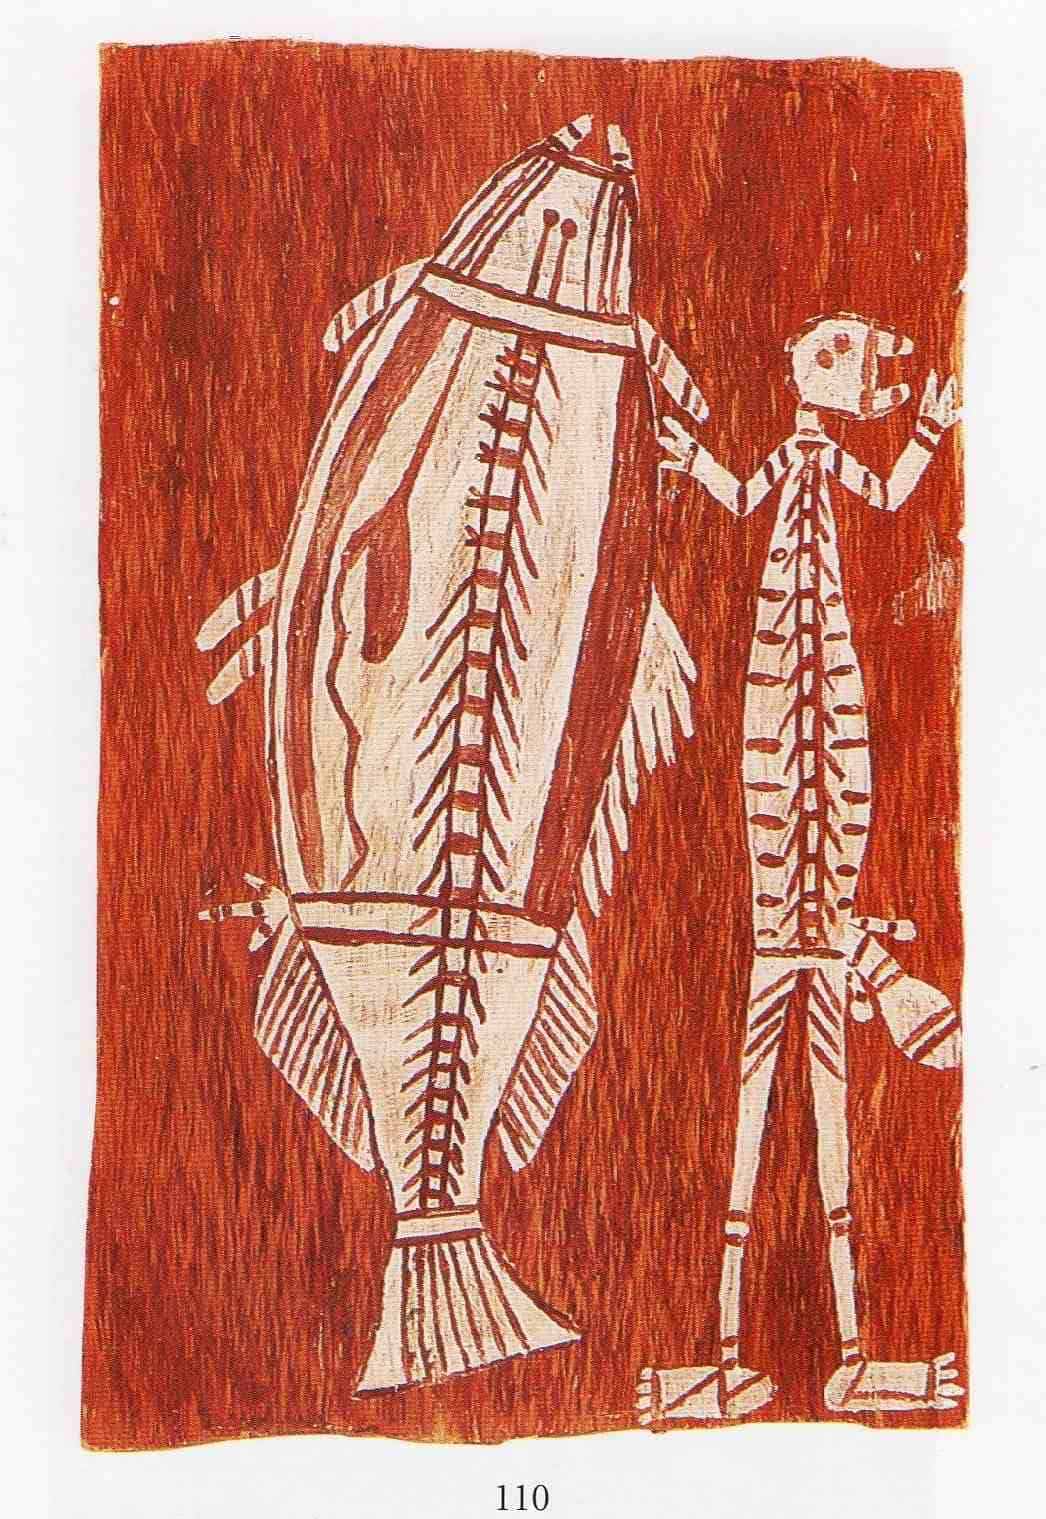 nangunyari bark painting of a person and a fish